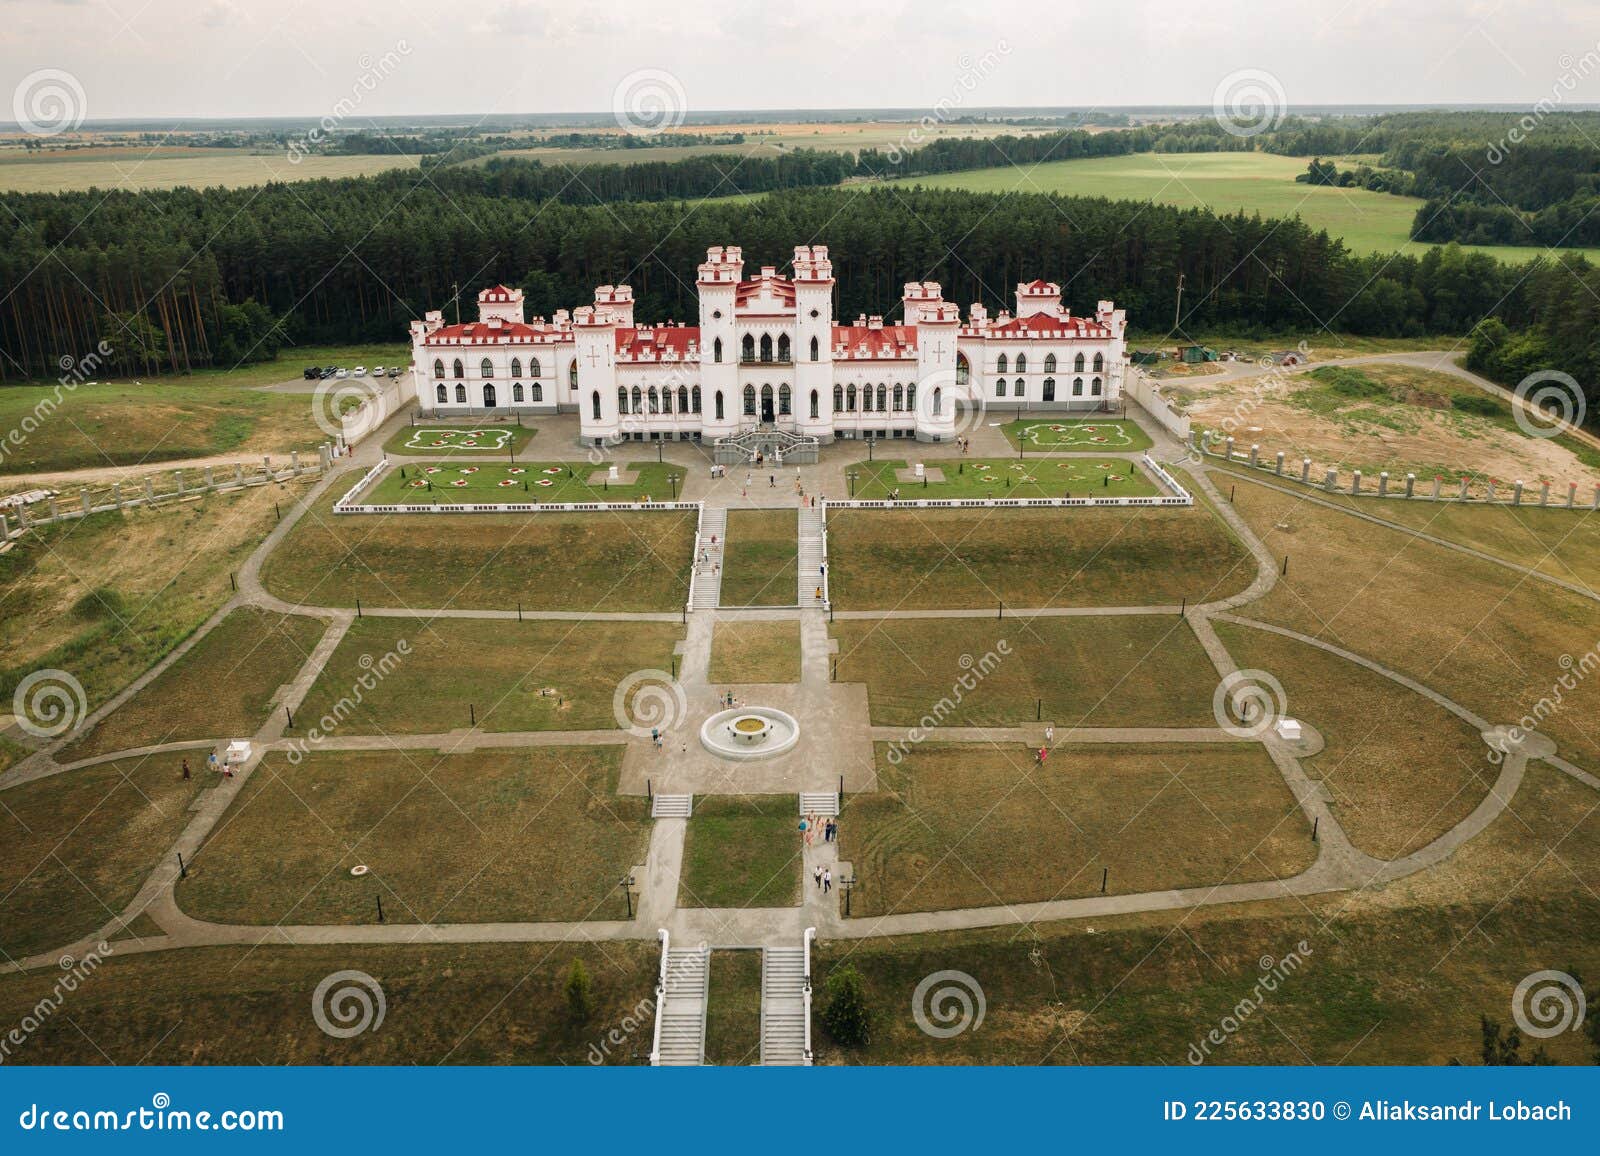 summer kossovsky castle in belarus.puslovsky palace